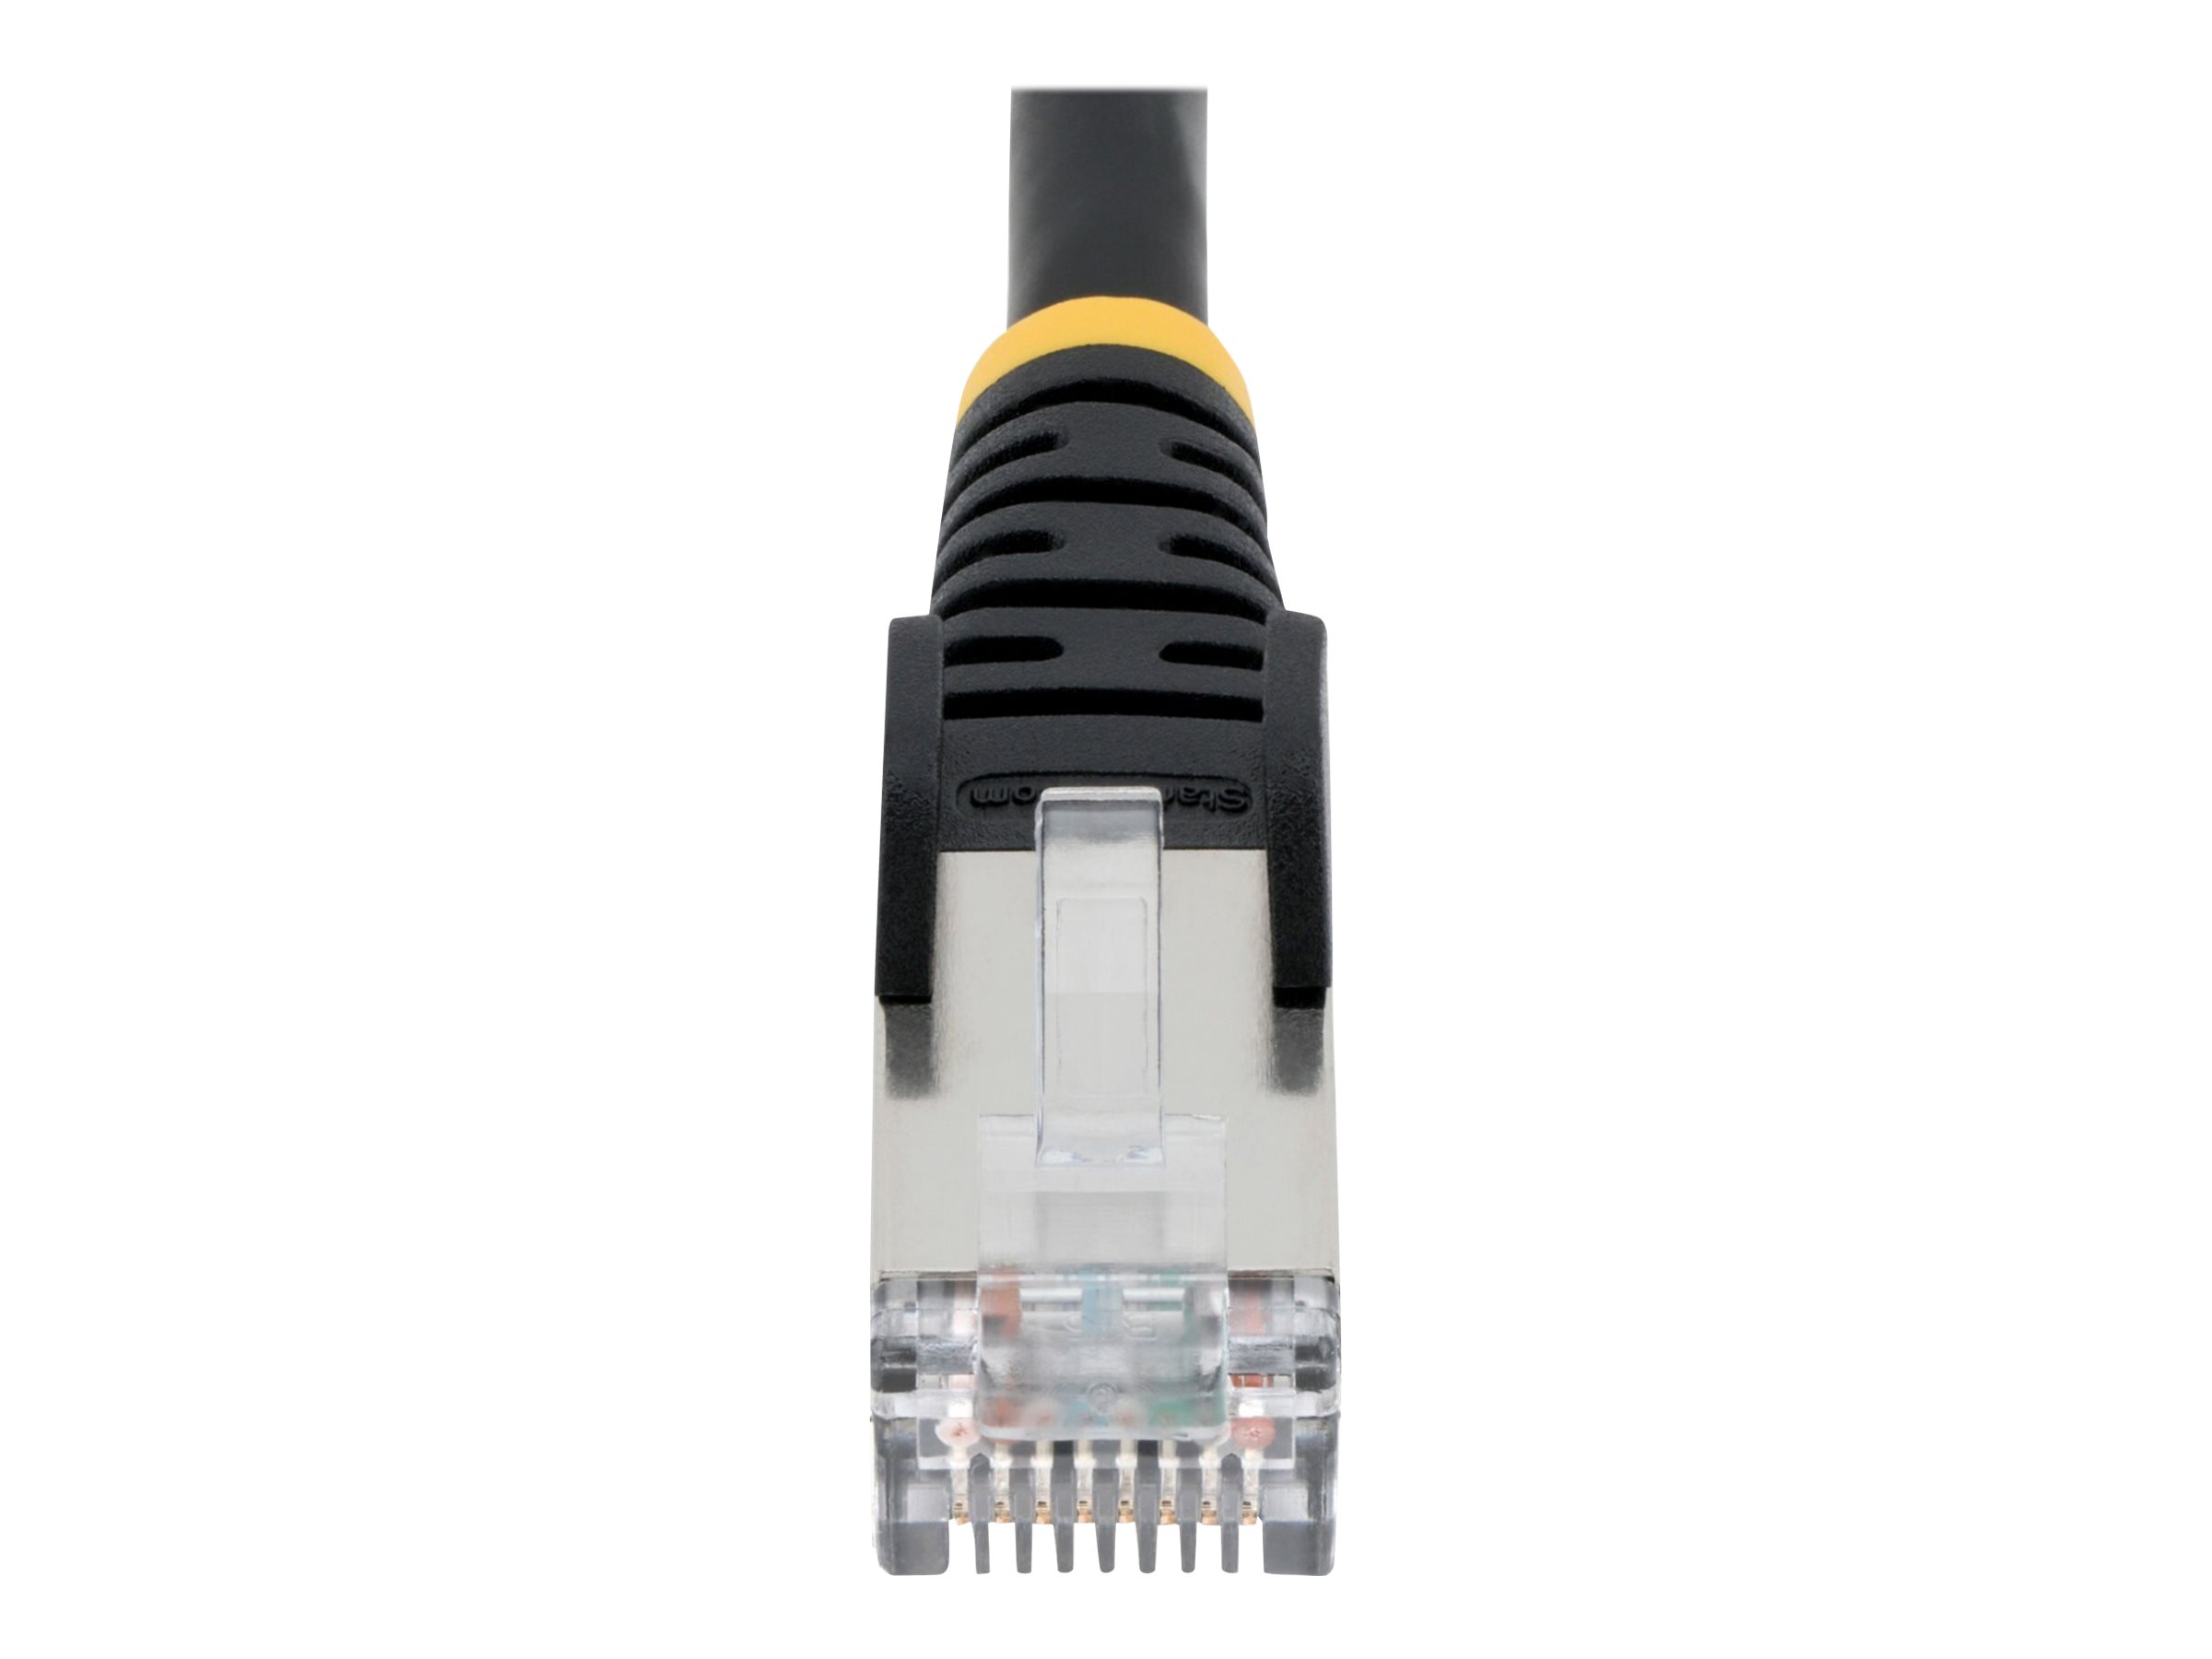 StarTech.com 50cm CAT6a Ethernet Cable - Black - Low Smoke Zero Halogen (LSZH)